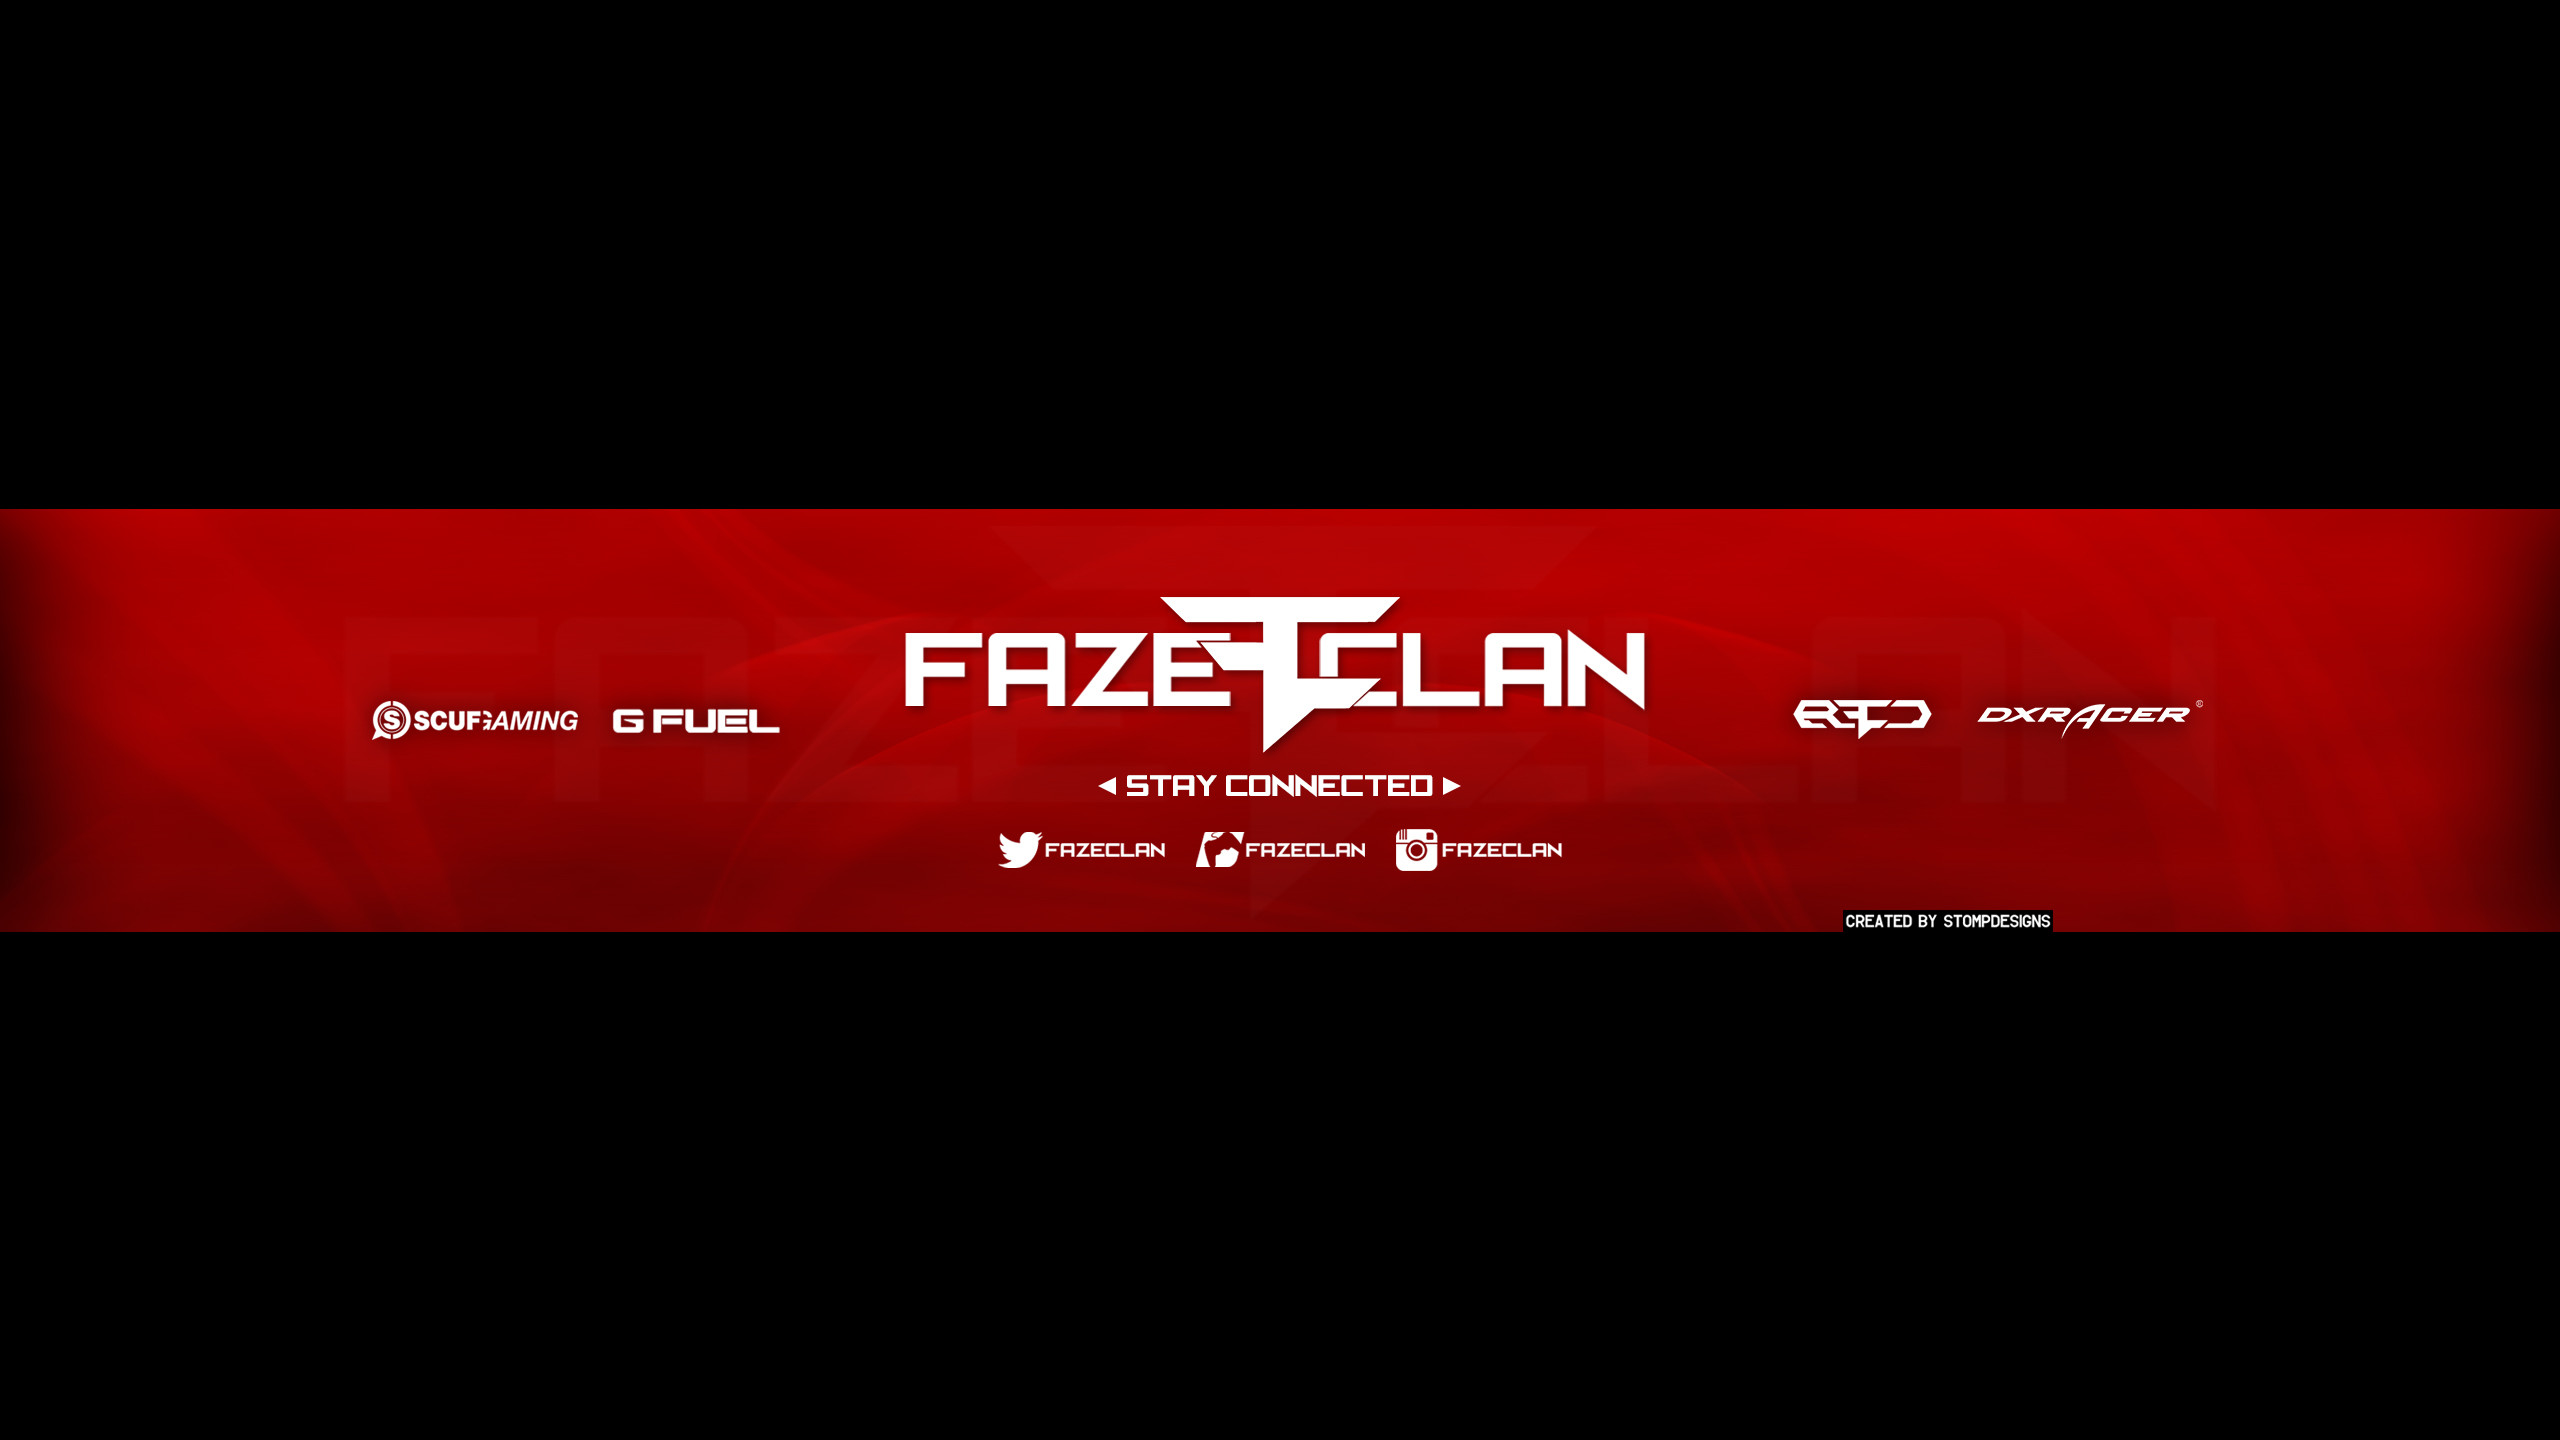 2560x1440 ... Faze Clan 2 Lock Screen by Extur on DeviantArt FaZe Clan iPhone  Wallpapers ...